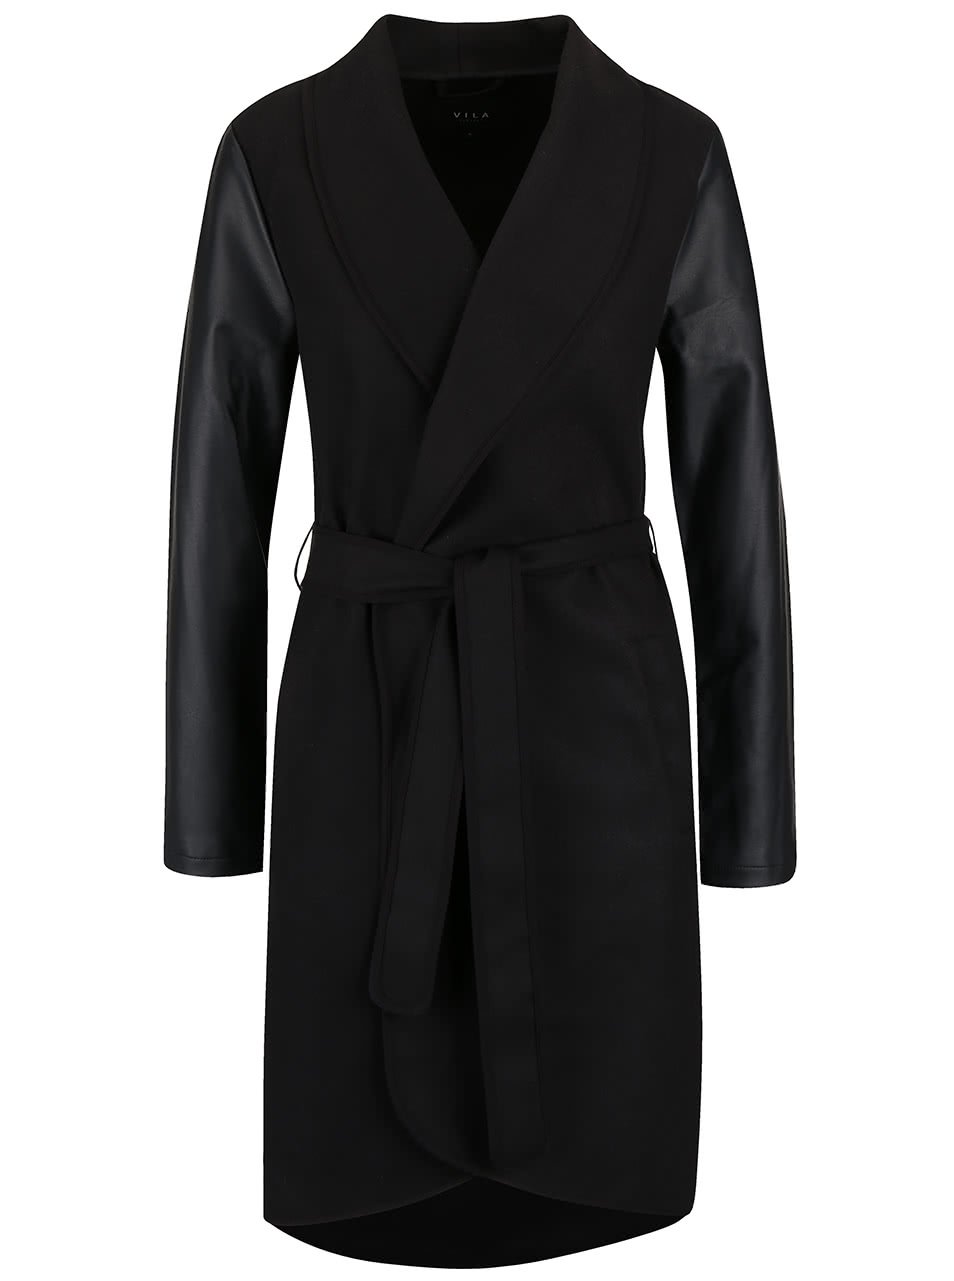 Černý lehký kabát s koženkovými rukávy a páskem VILA Ida